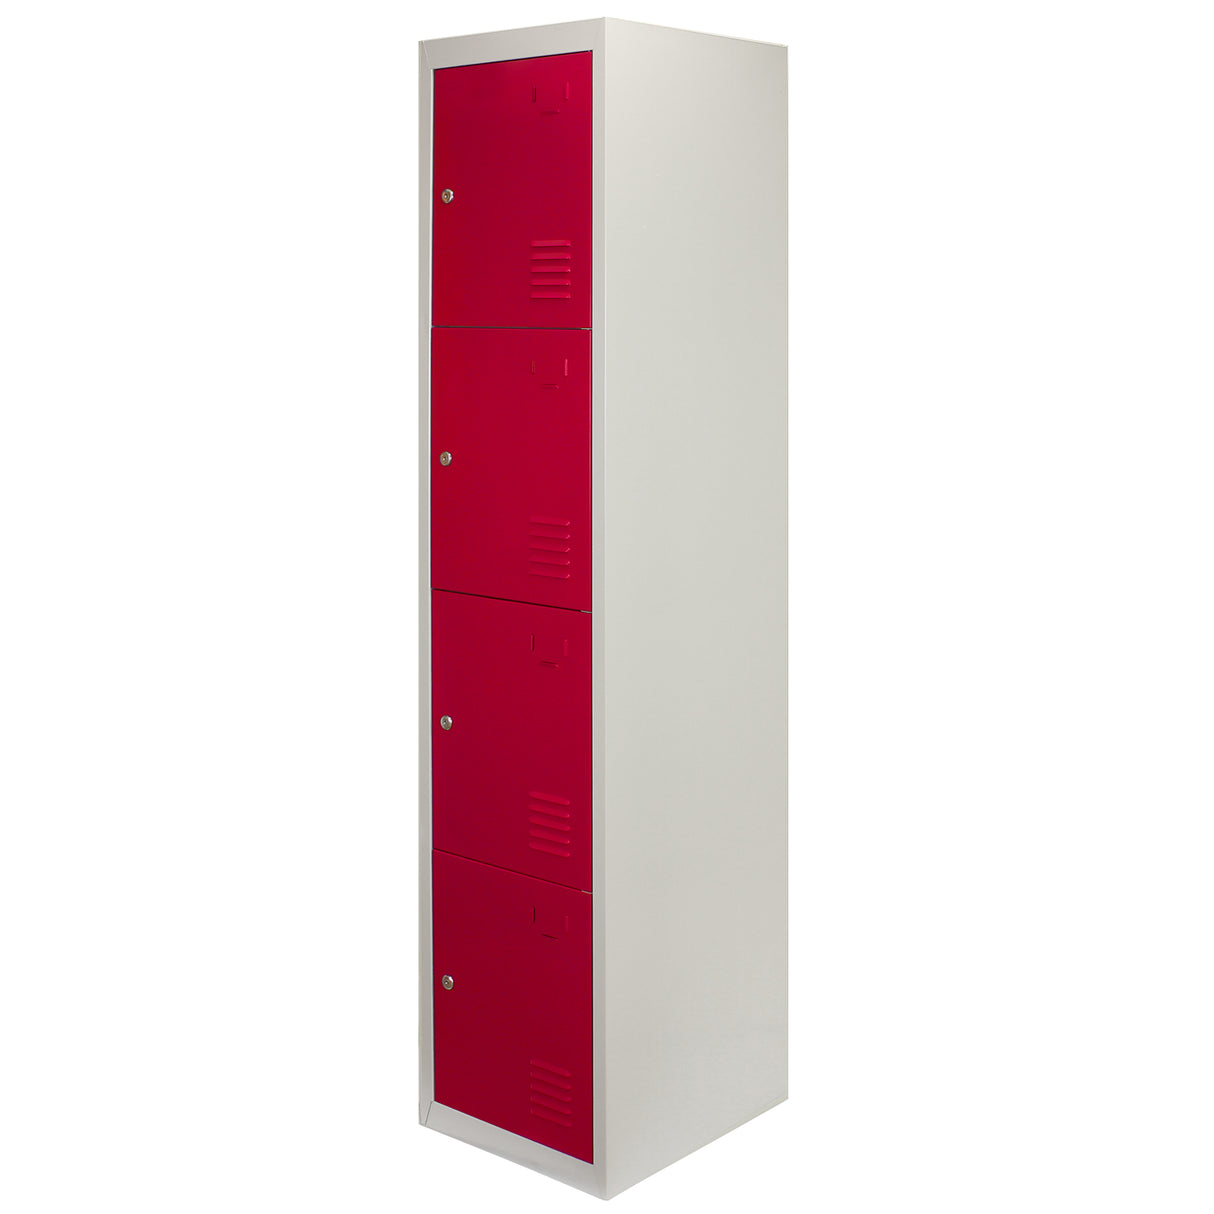 3 x Metal Storage Lockers - Four Doors, Red - Flatpack